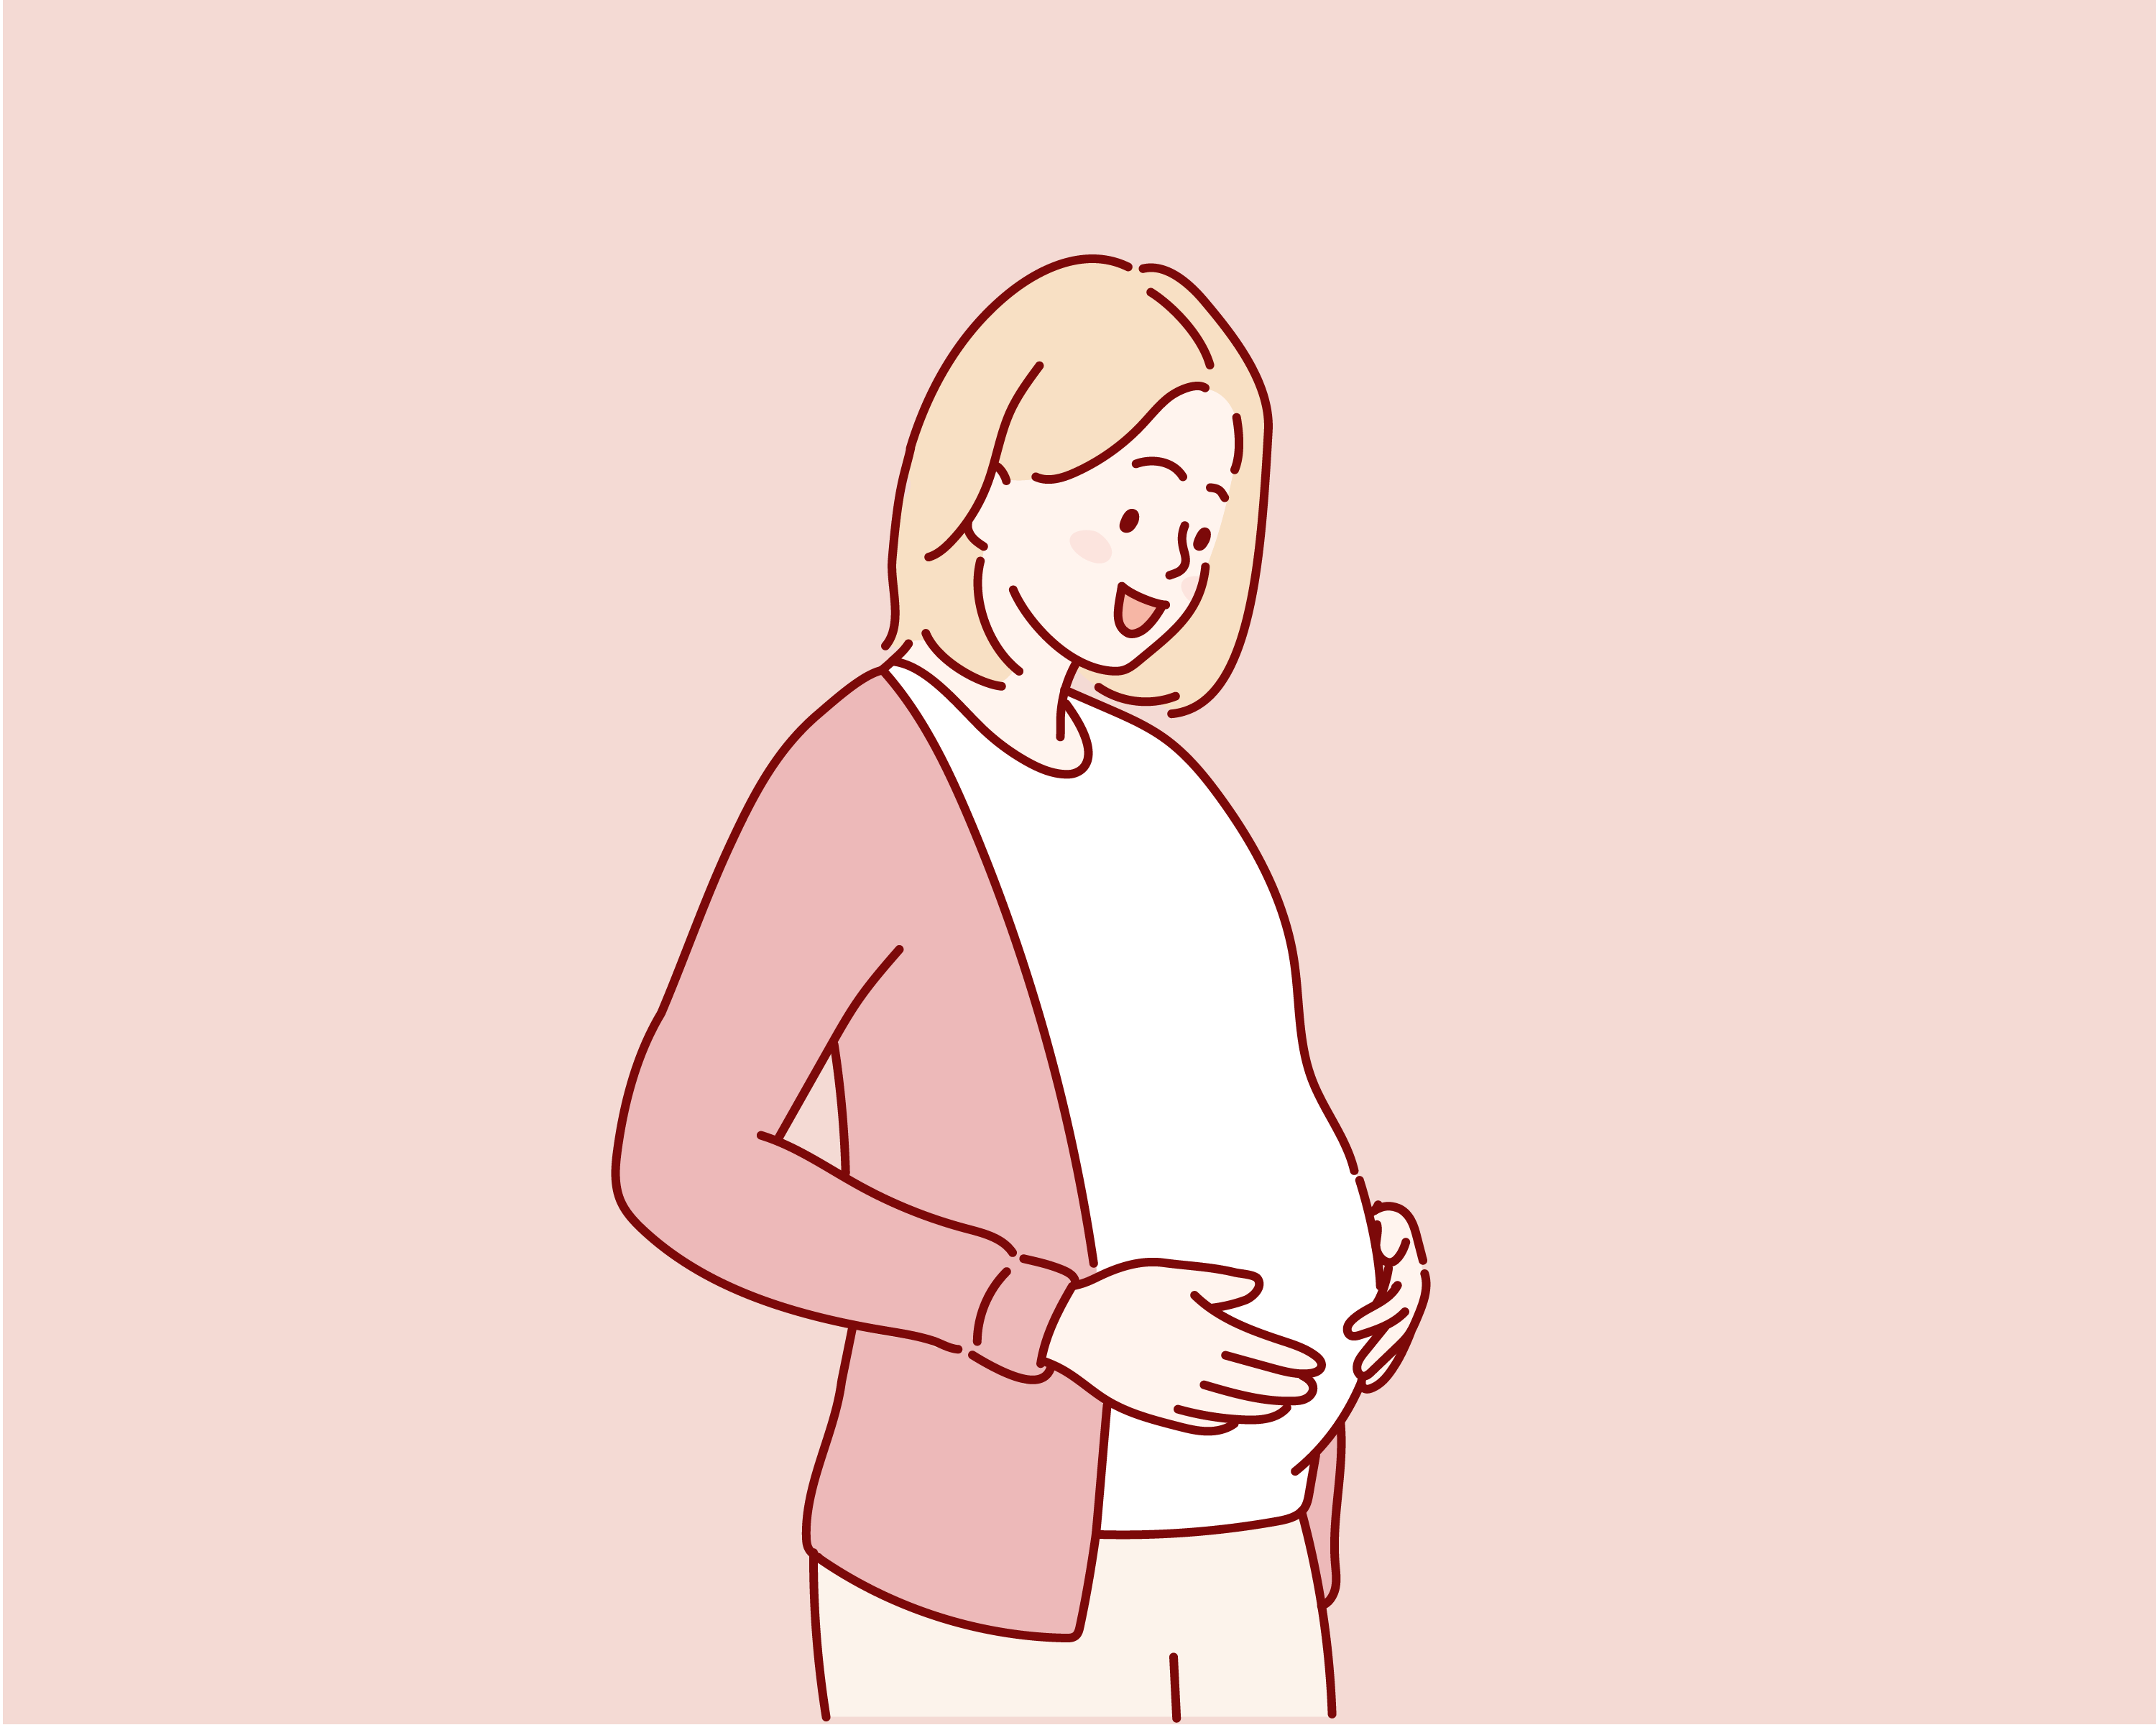 Desenho de mulher grávida com as mãos na barriga